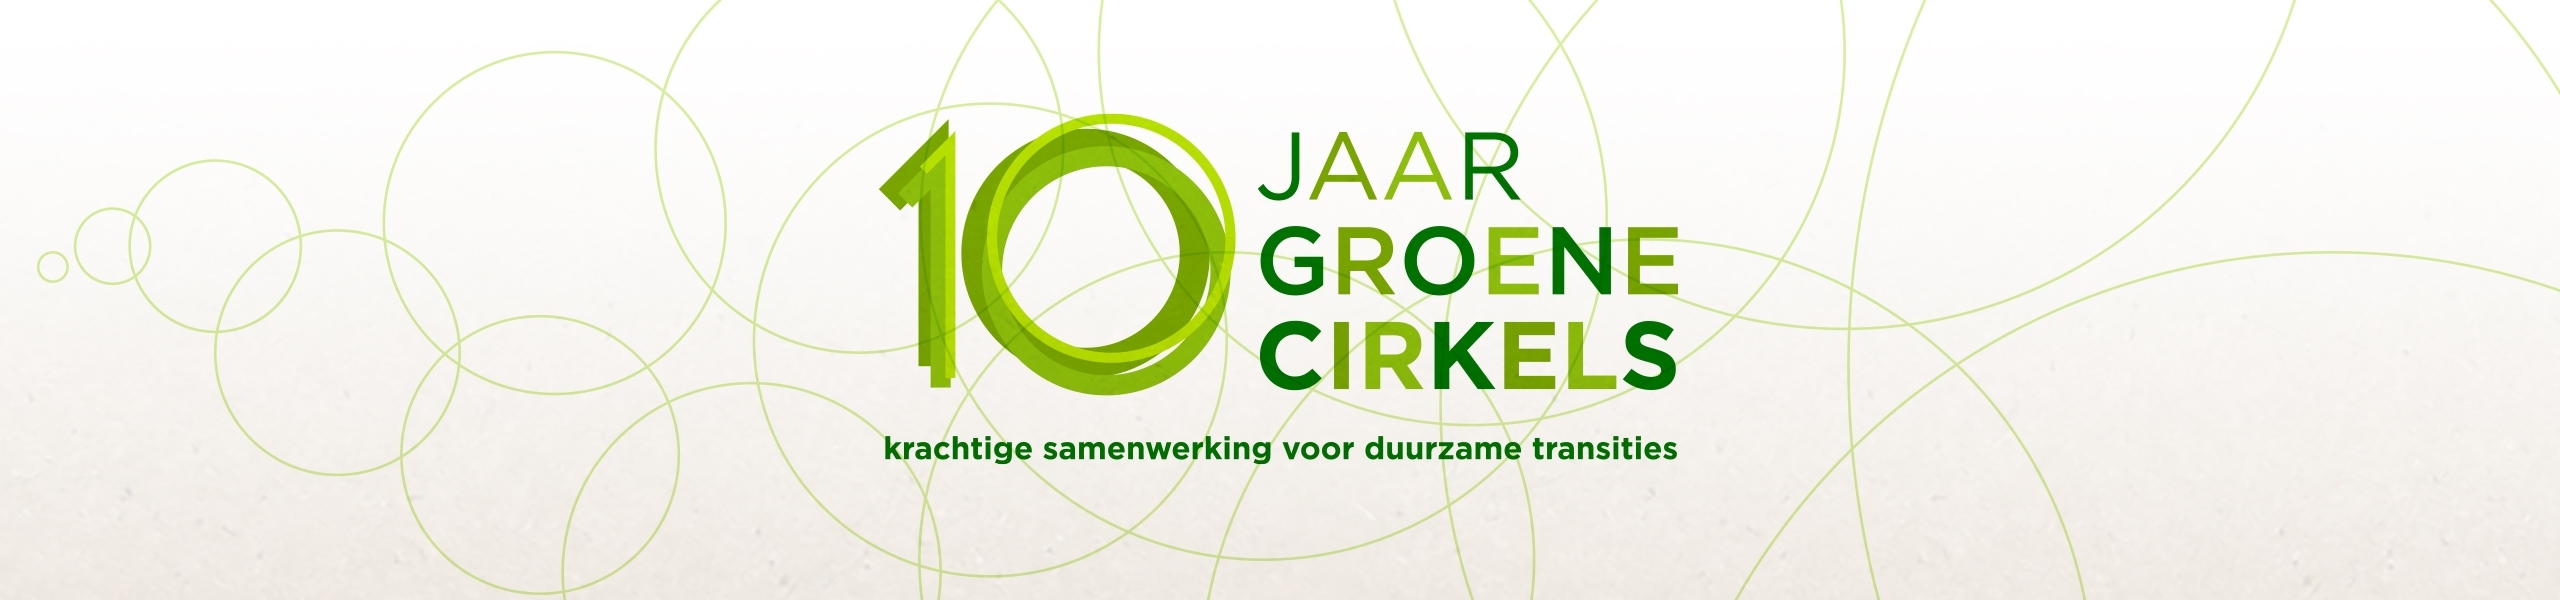 Logo 10 jaar Groene Cirkels met als ondertitel 'krachtige samenwerking voor duurzame transities'